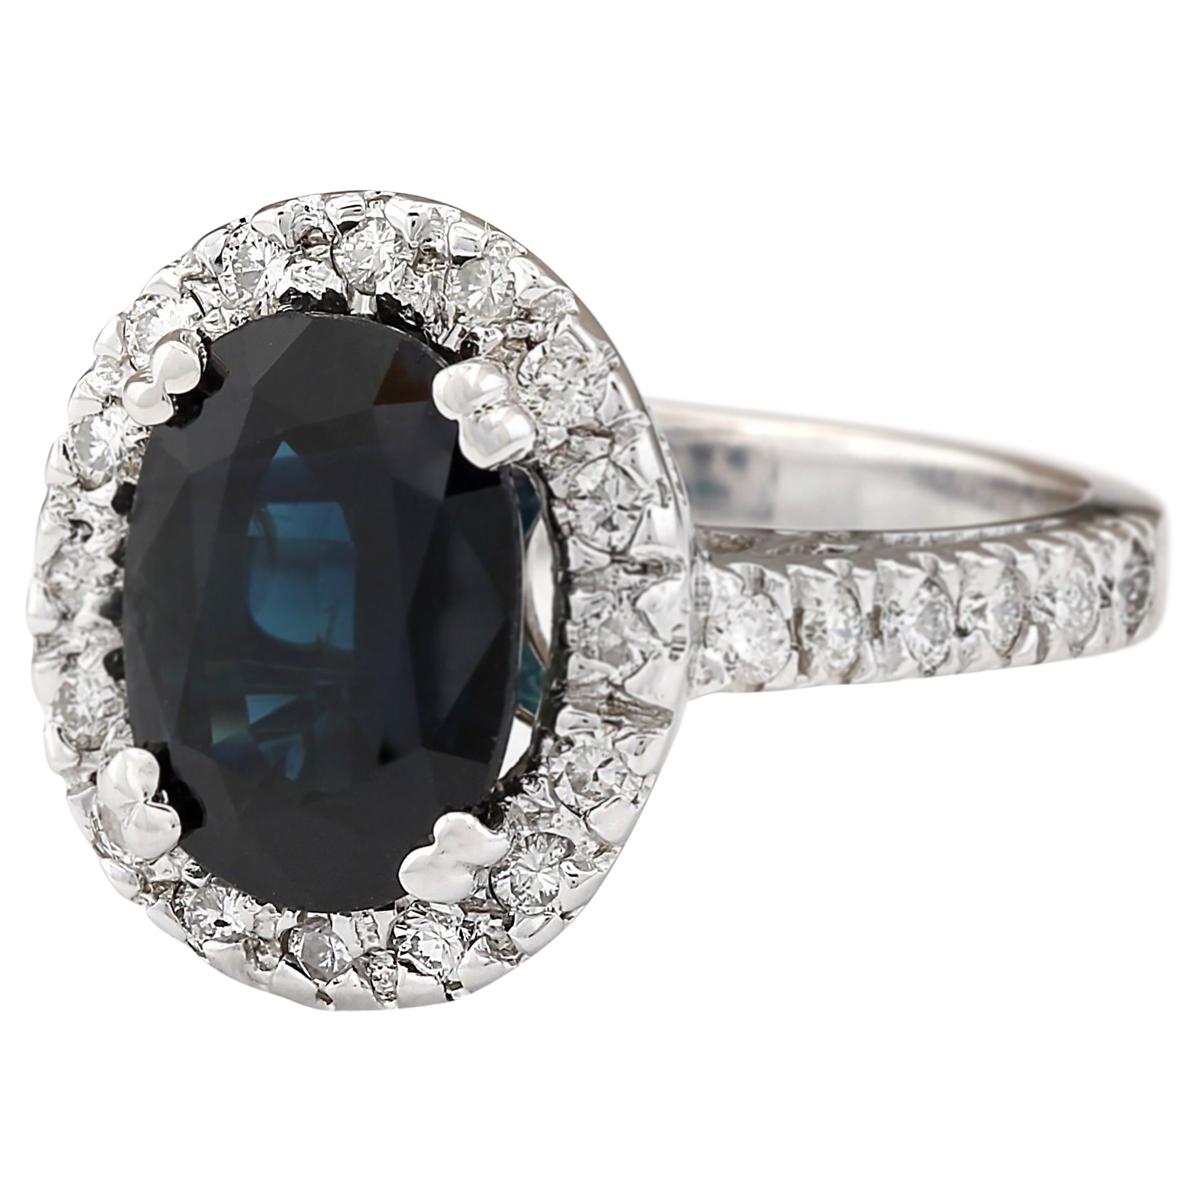 5.28 Carat Natural Sapphire 14 Karat White Gold Diamond Ring
Stamped: 14K White Gold
Total Ring Weight: 7.4 Grams
Total Natural Sapphire Weight is 4.58 Carat (Measures: 11.00x9.00 mm)
Color: Blue
Total Natural Diamond Weight is 0.70 Carat
Color: